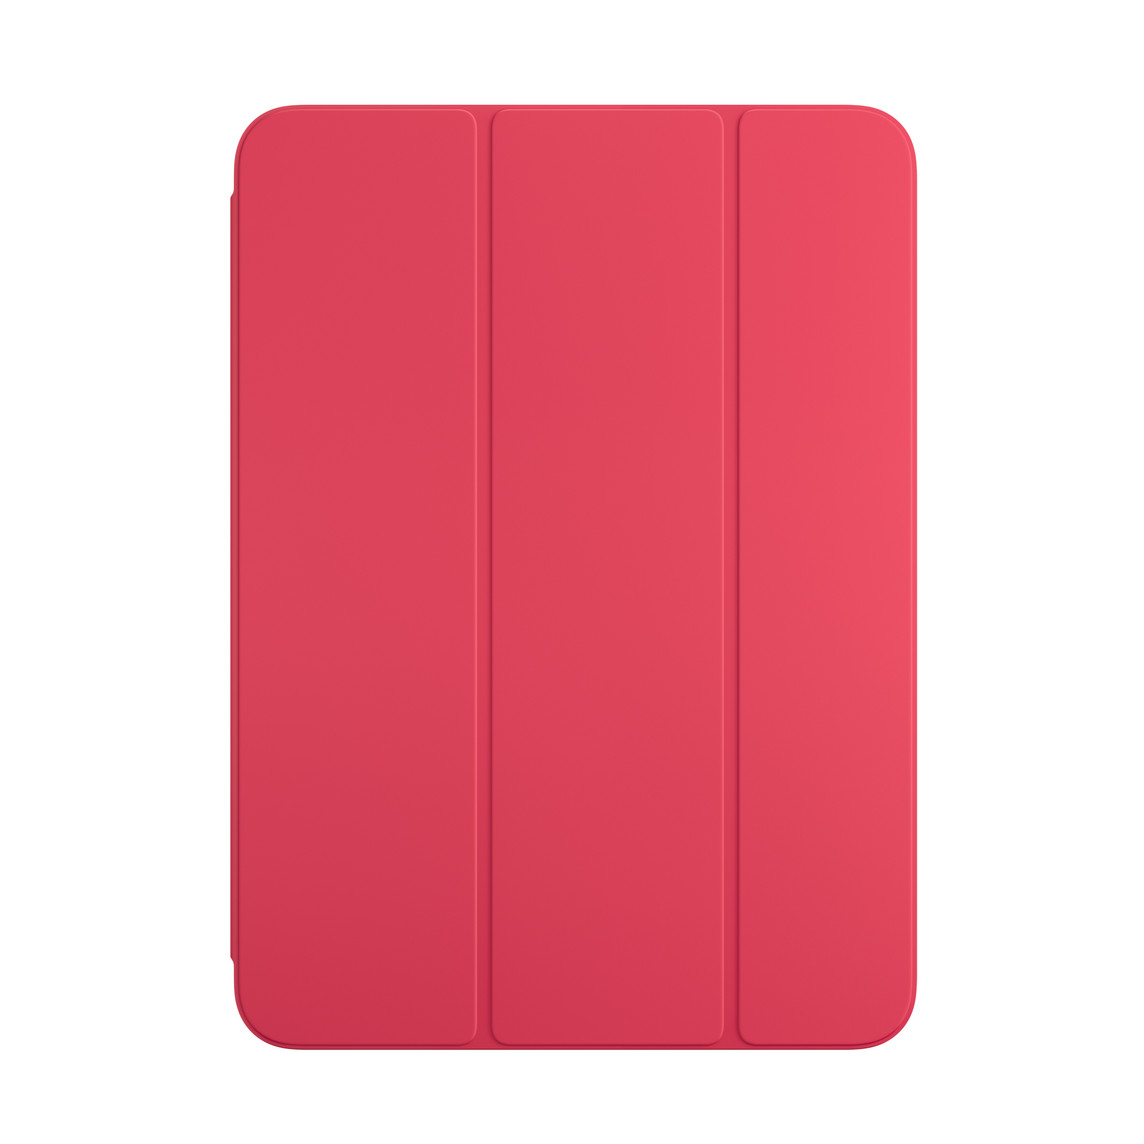 Imagem da parte da frente do Smart Folio melancia para iPad